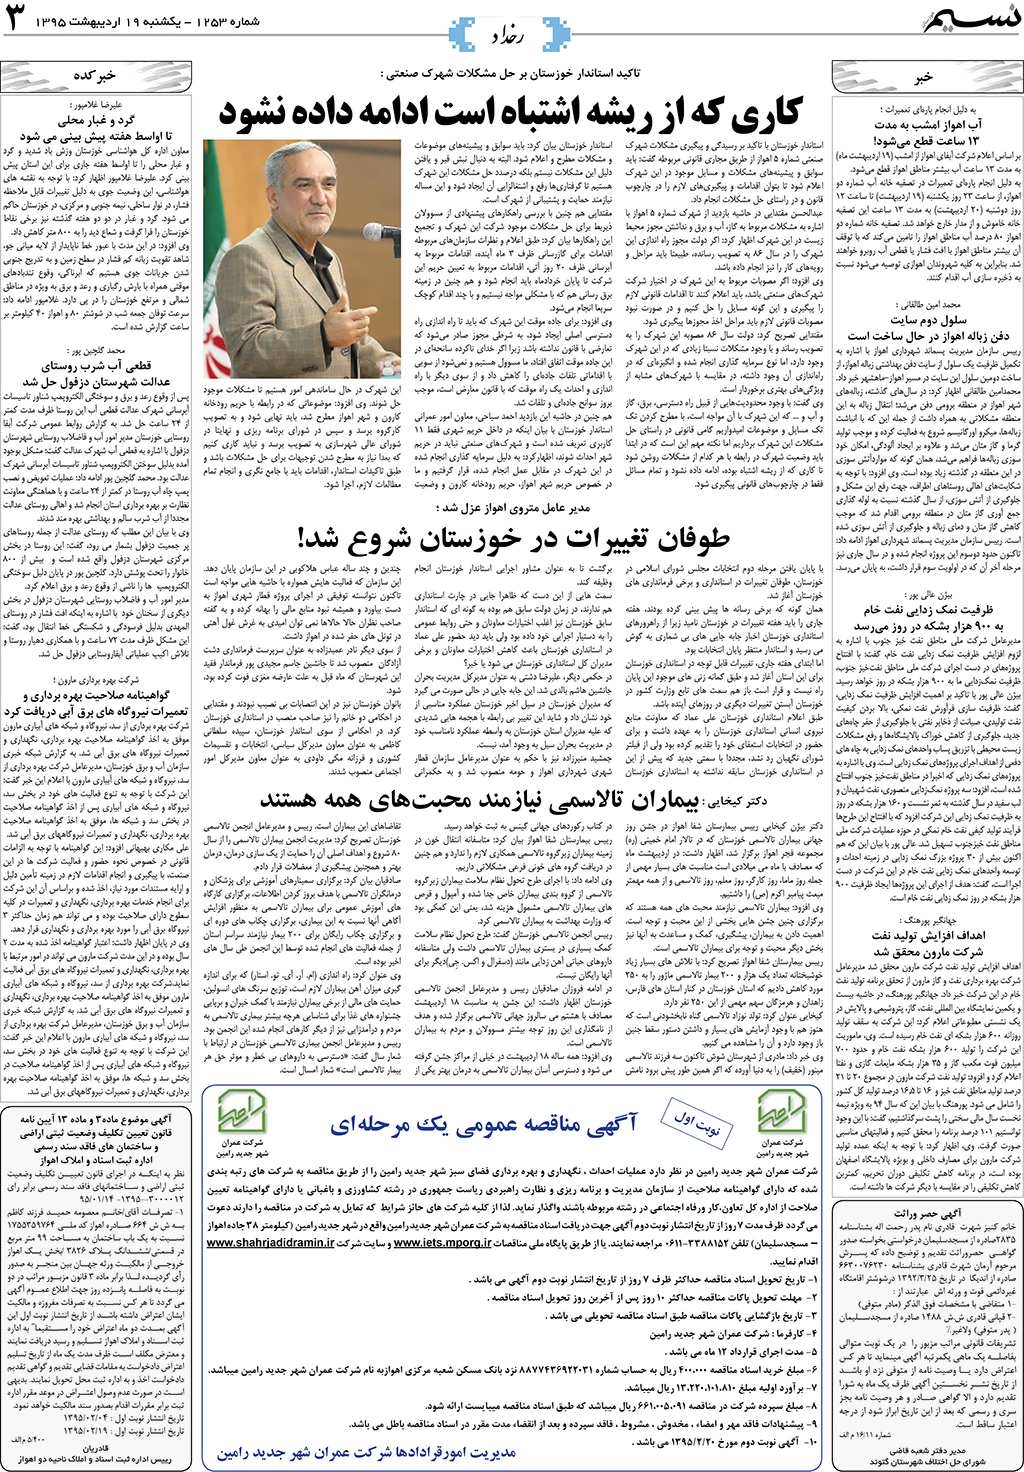 صفحه رخداد روزنامه نسیم شماره 1253